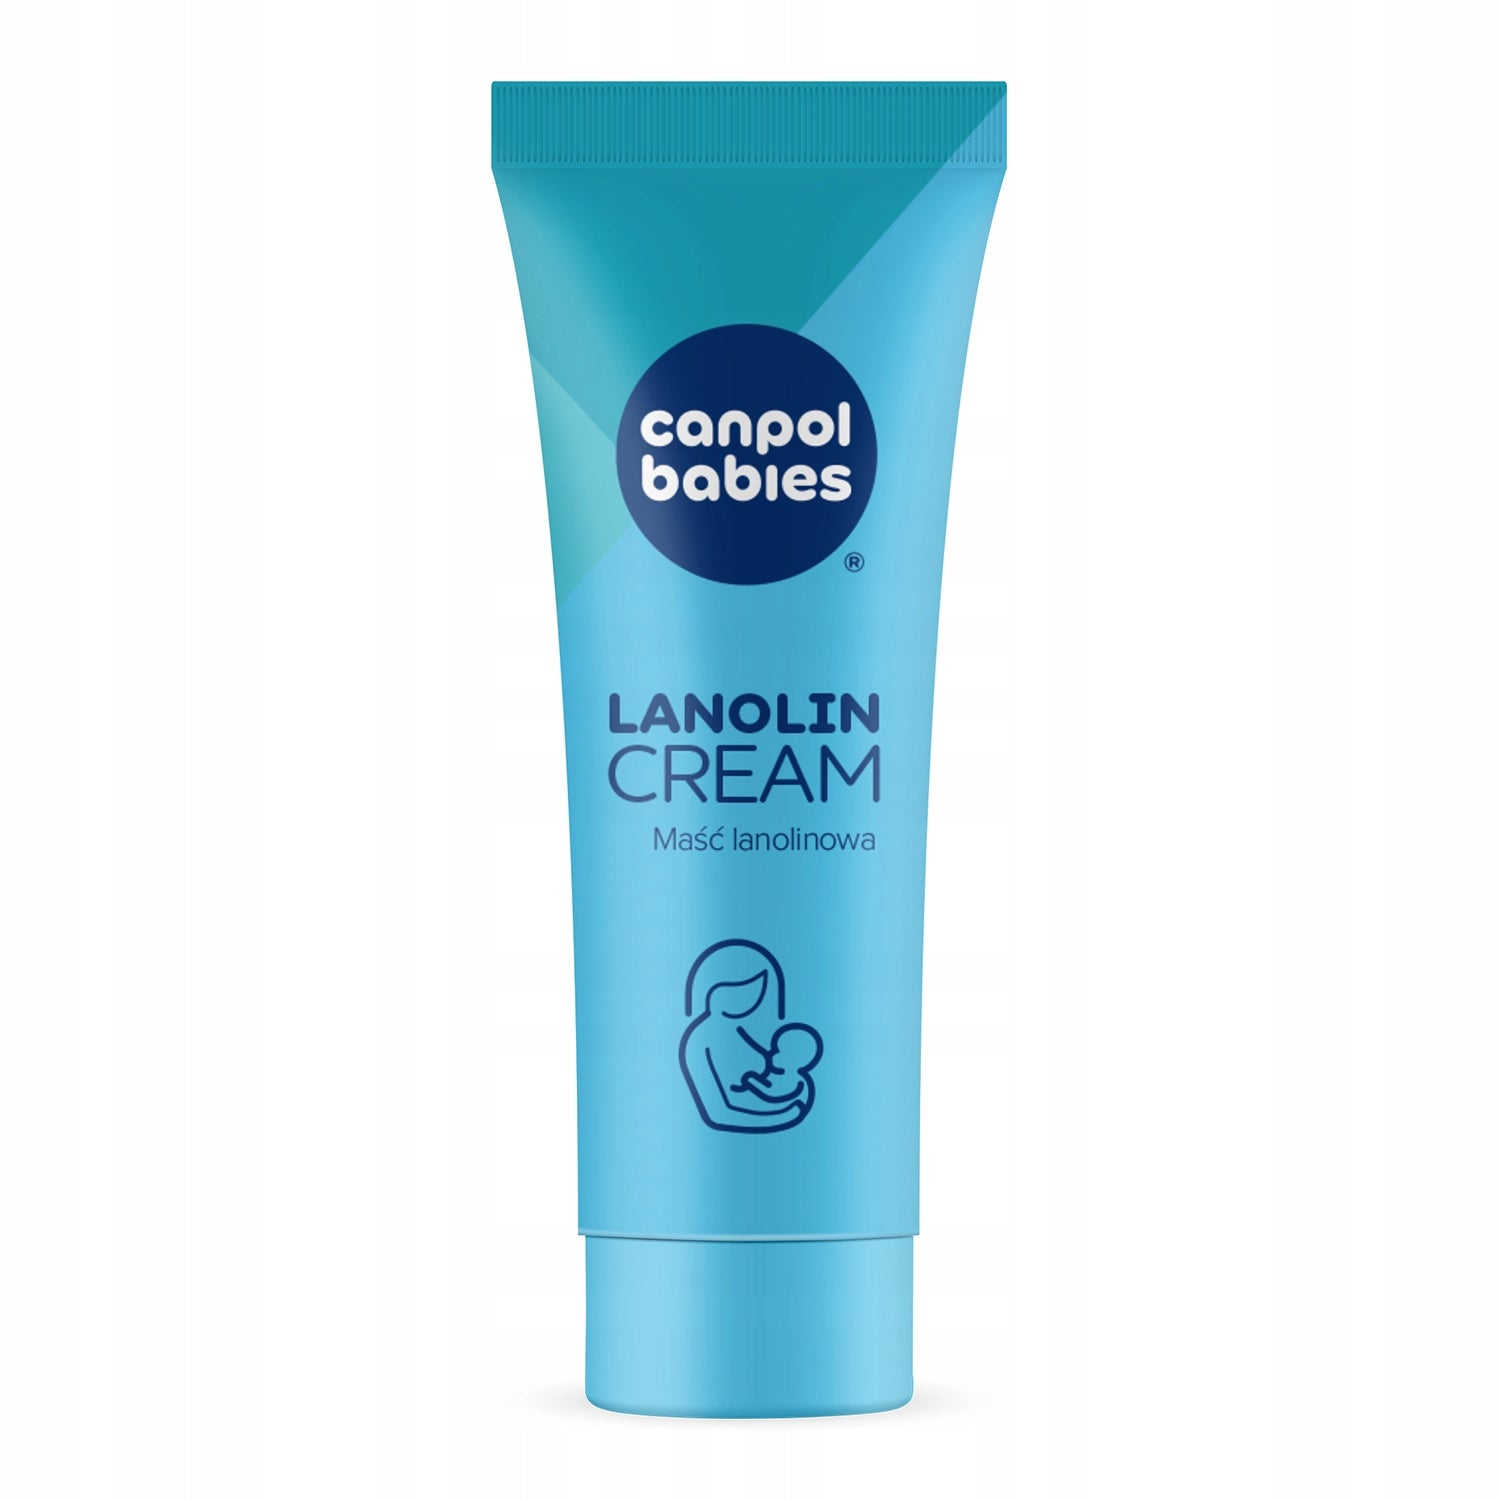 Canpol Babies: Lanolin Lanolin Cream 7 g